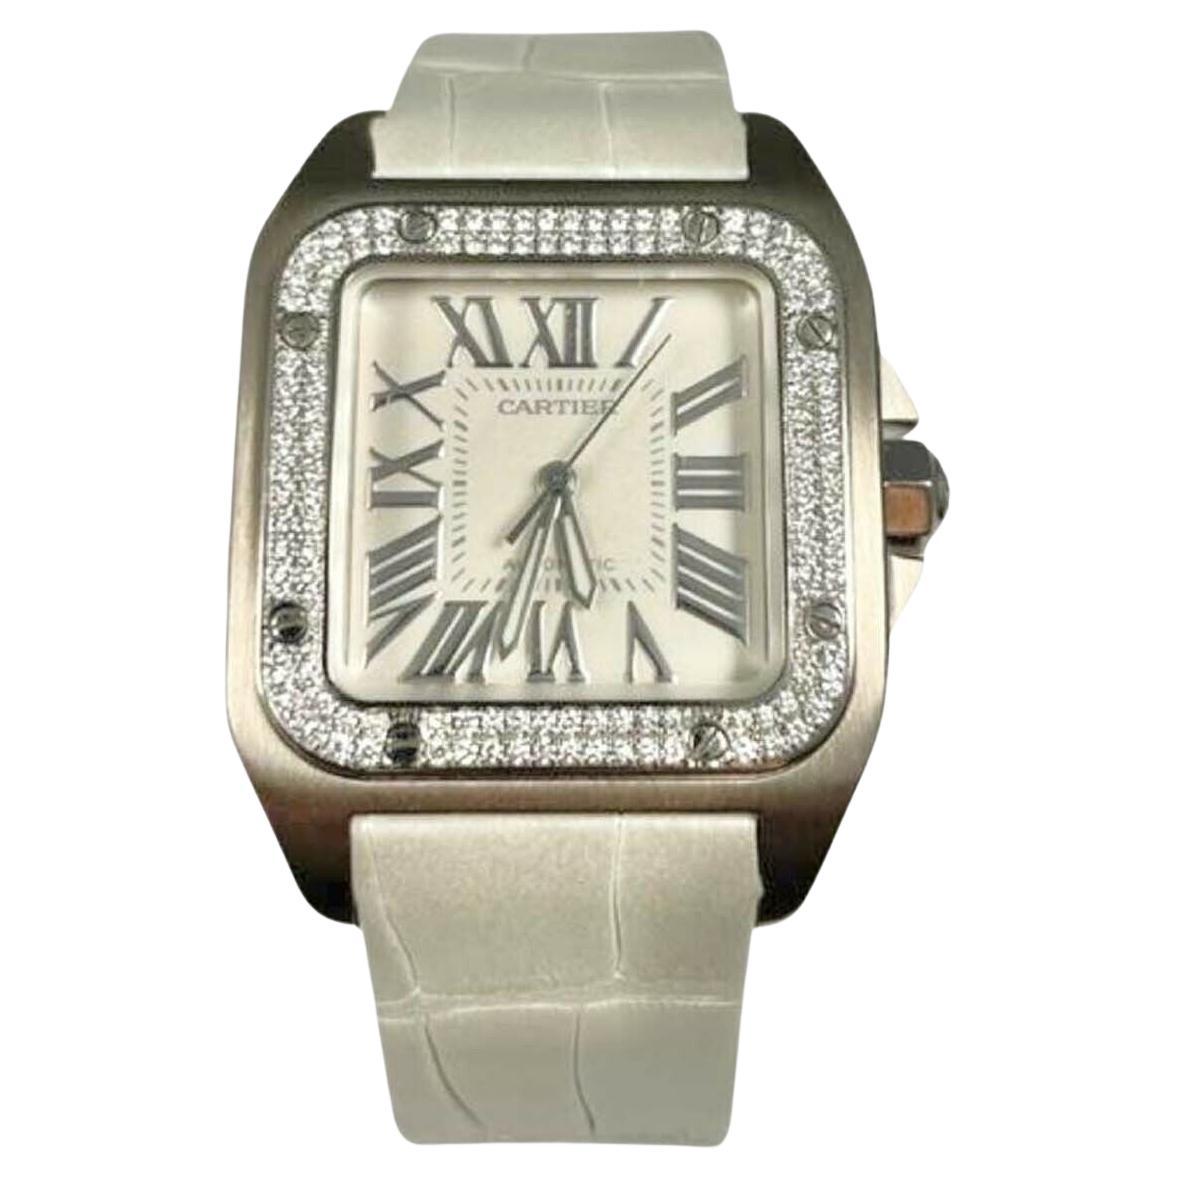 Cartier Santos 100 Bracelet en cuir et or blanc 18 carats avec lunette en diamants, réf. 2881